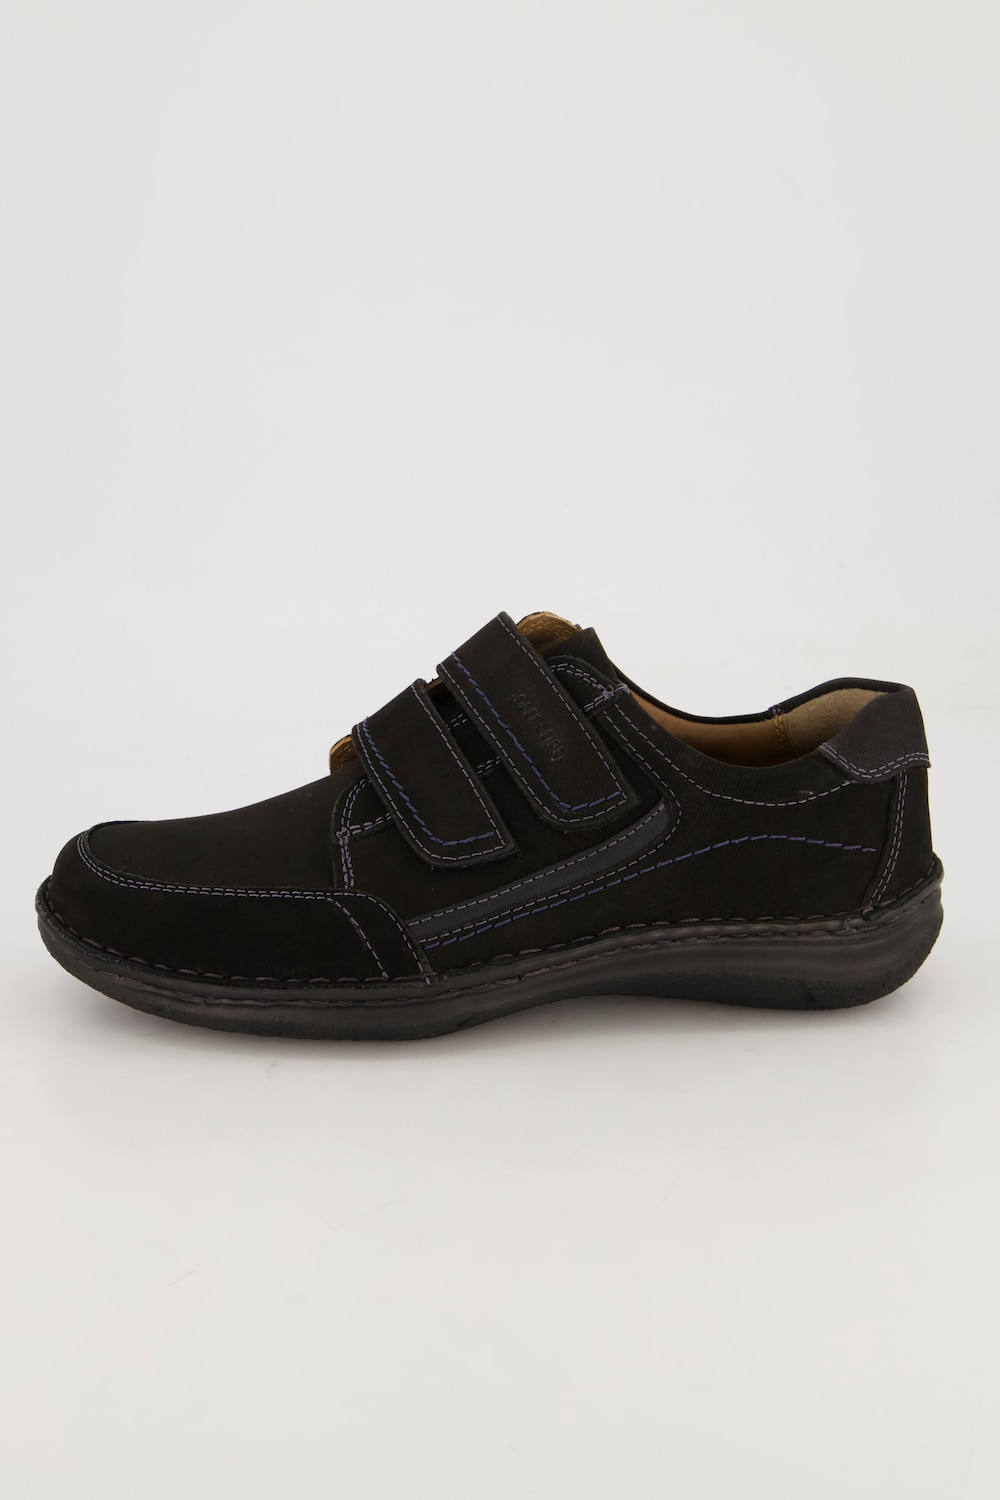 Grote Maten Lage schoen van Josef Seibel, Heren, zwart, Maat: 42, Leer, JP1880